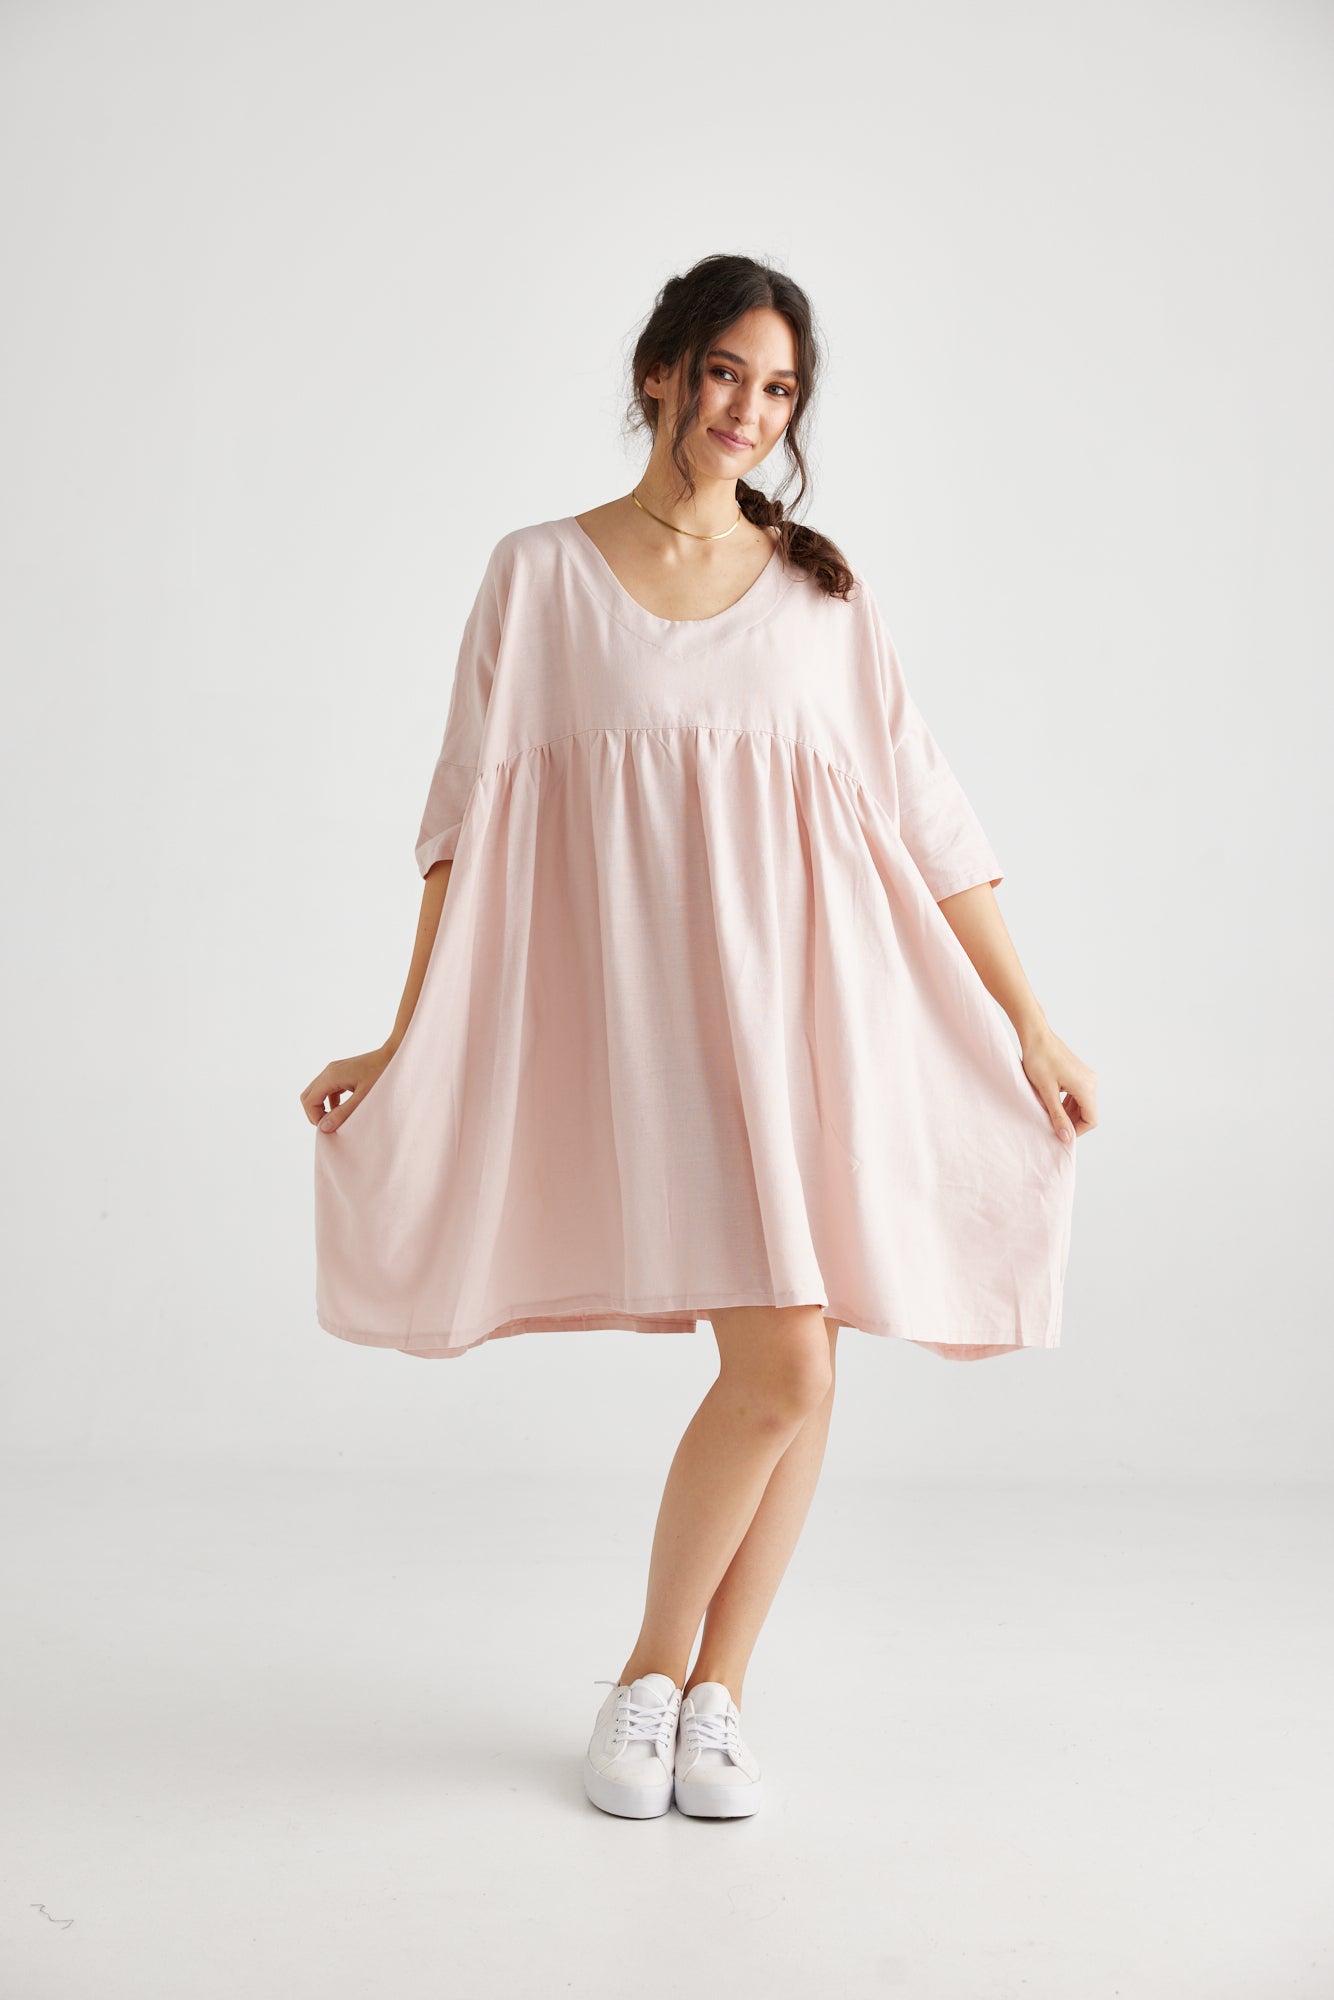 Provence dress. Blush pink